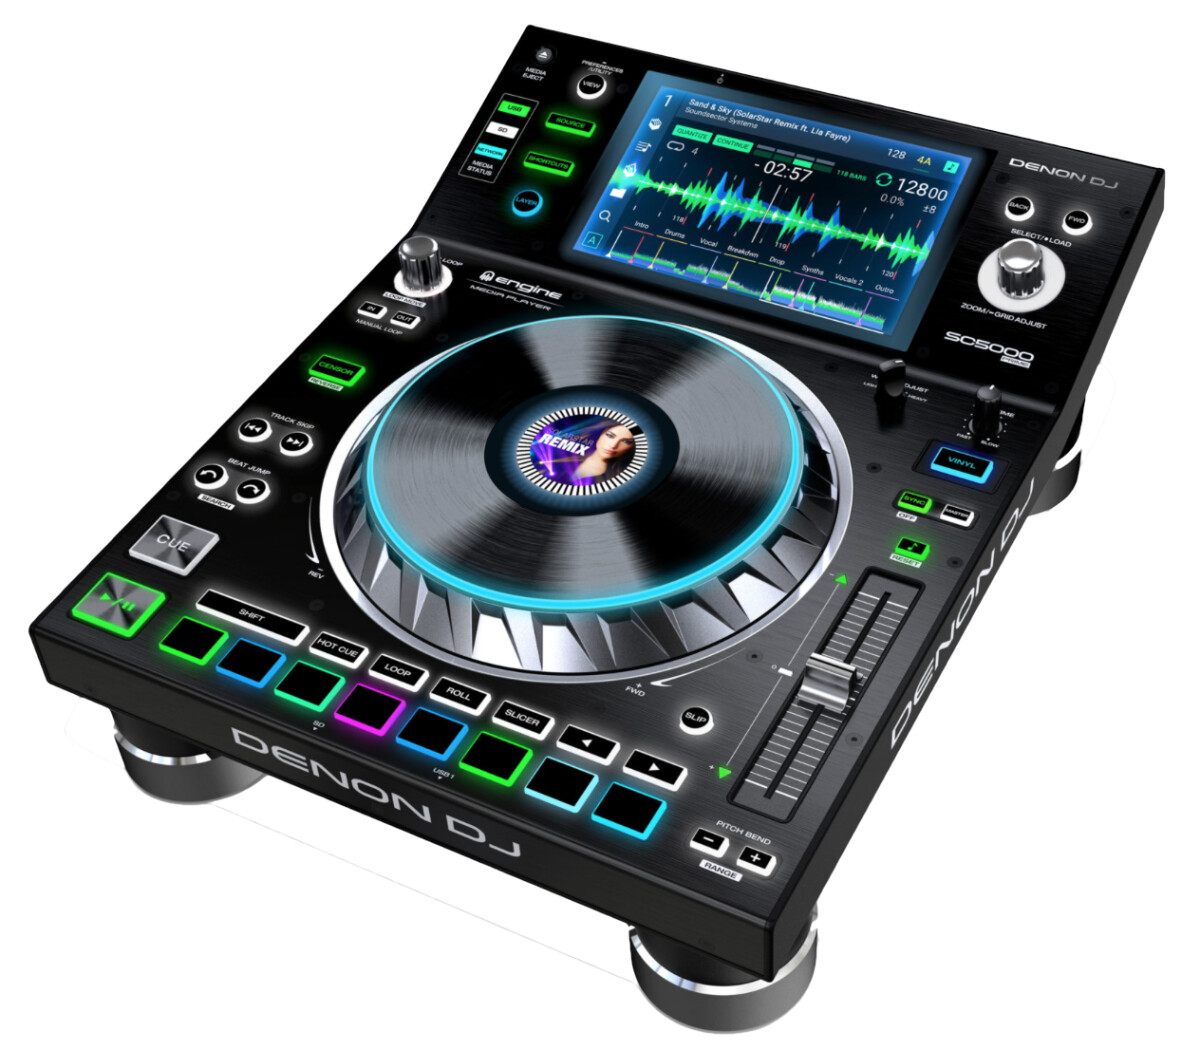 [NAMM] Lecteur multimédia Denon DJ SC5000 Prime